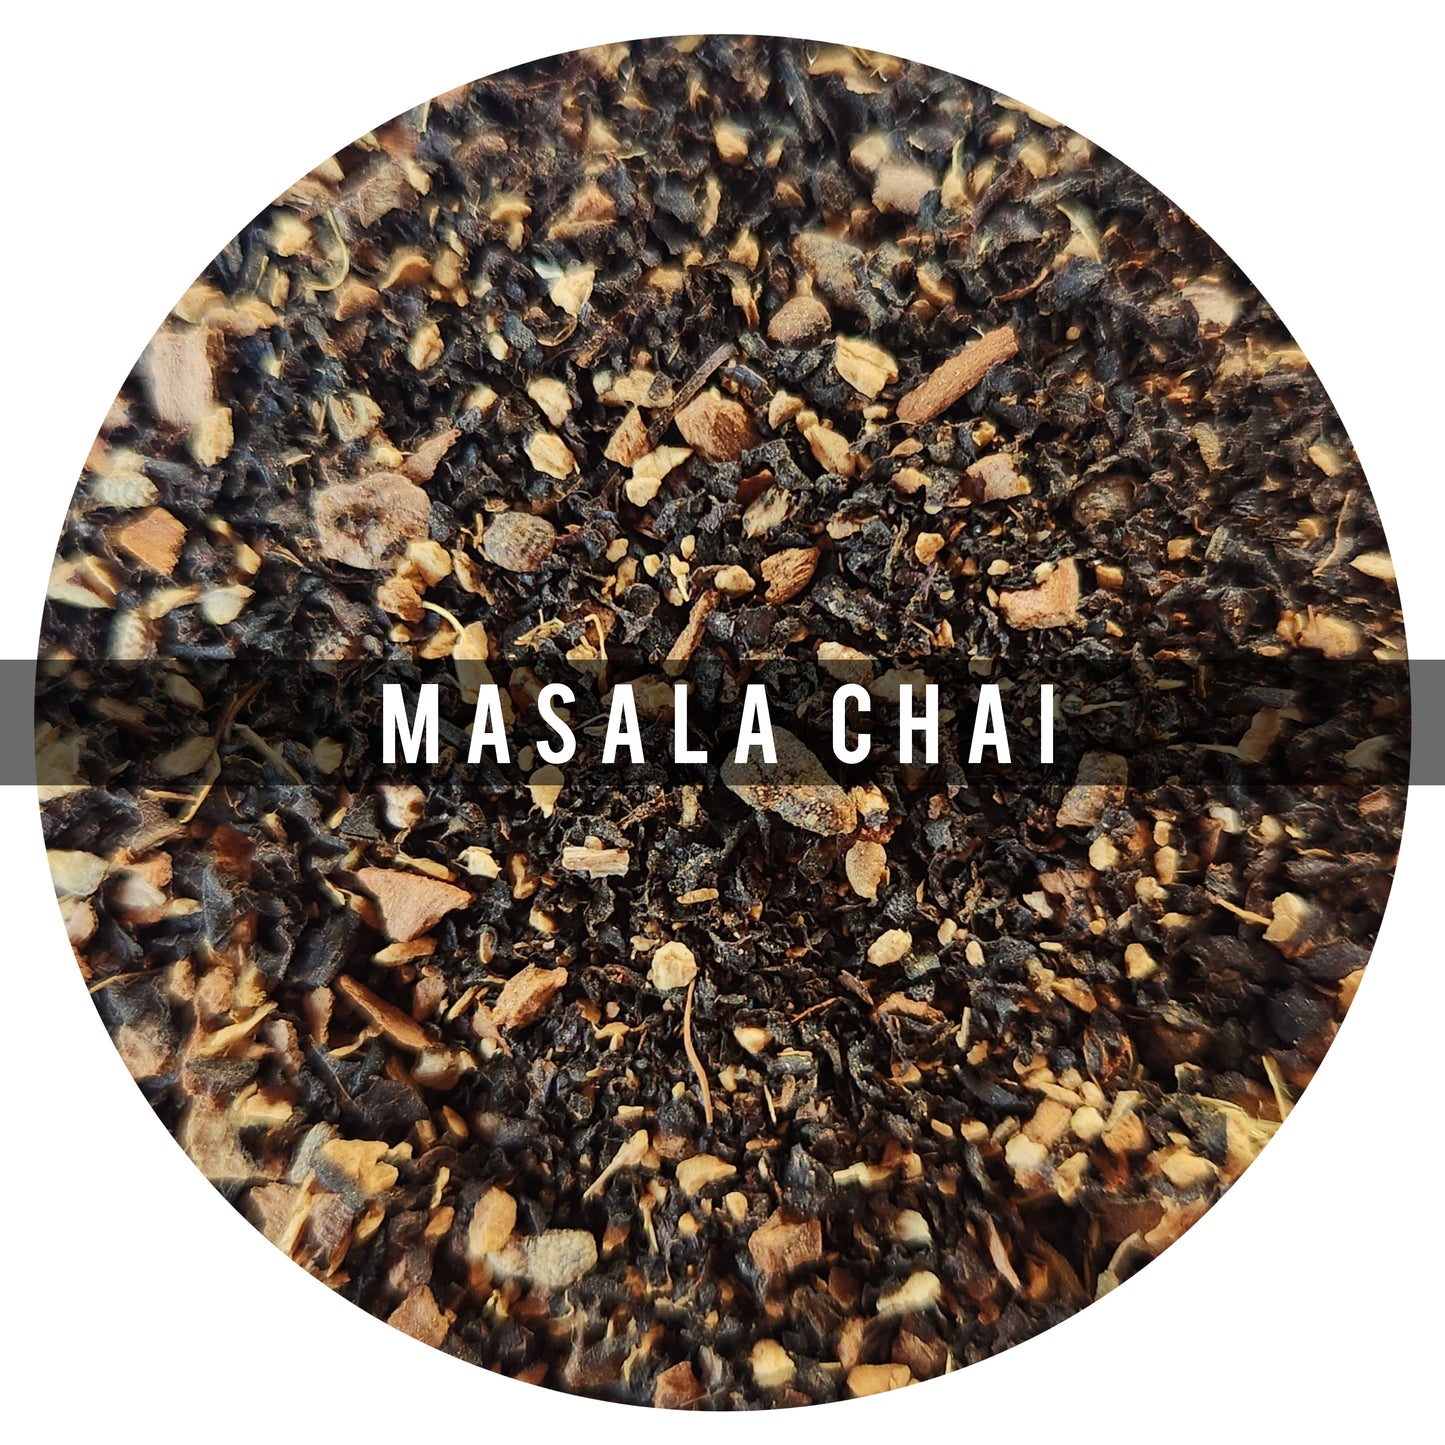 Chai Masala 90g: El Típico Chai de India
Ingredientes: Te Negro, Cardamomo, Canela, Jengibre, Pimienta y Clavo